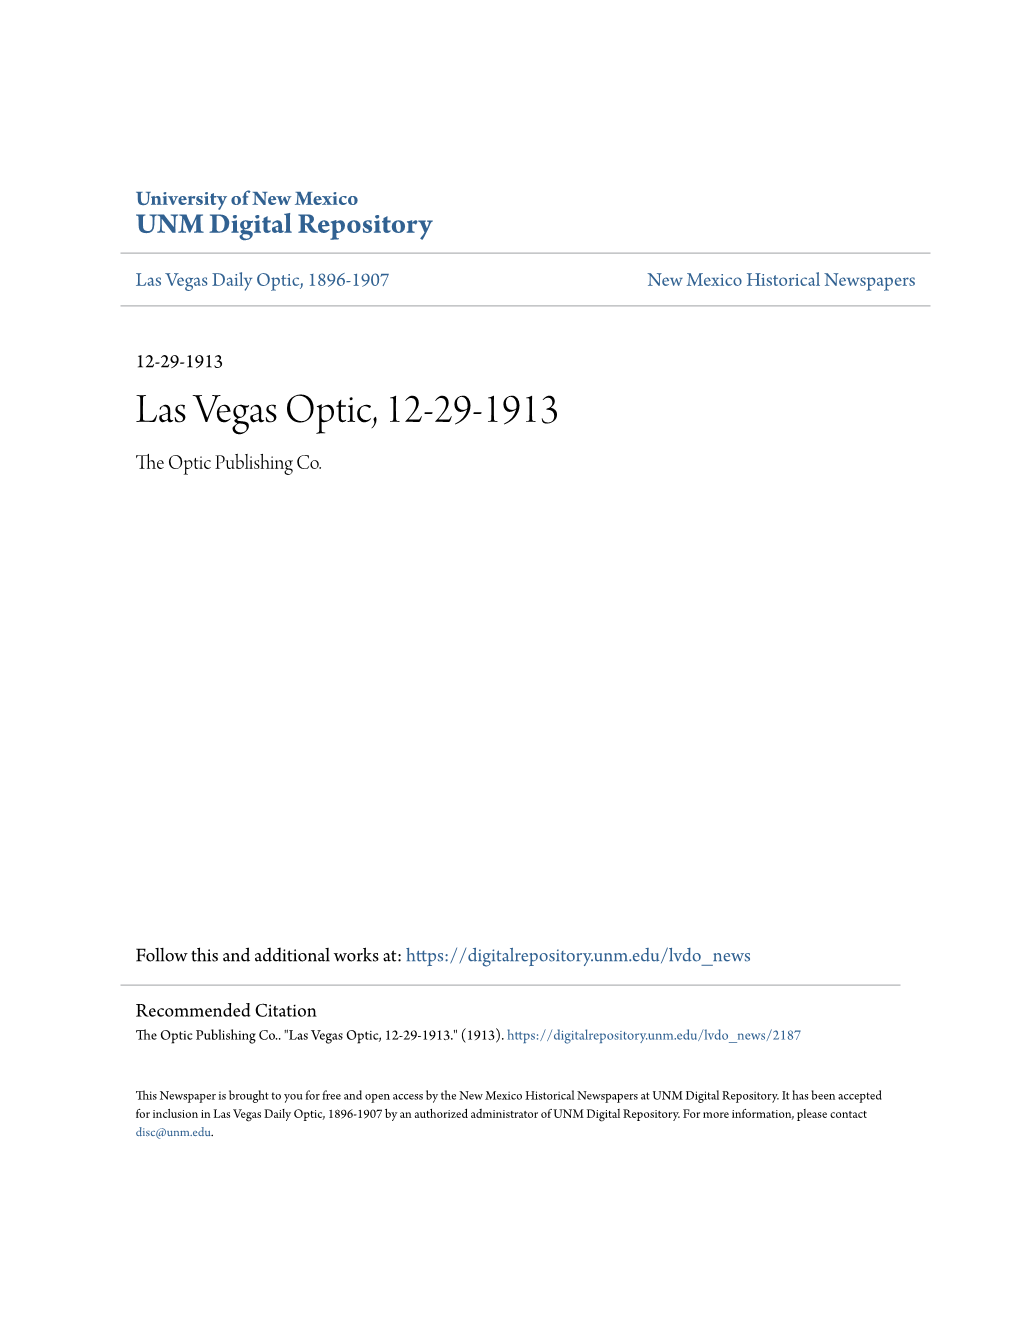 Las Vegas Optic, 12-29-1913 the Optic Publishing Co